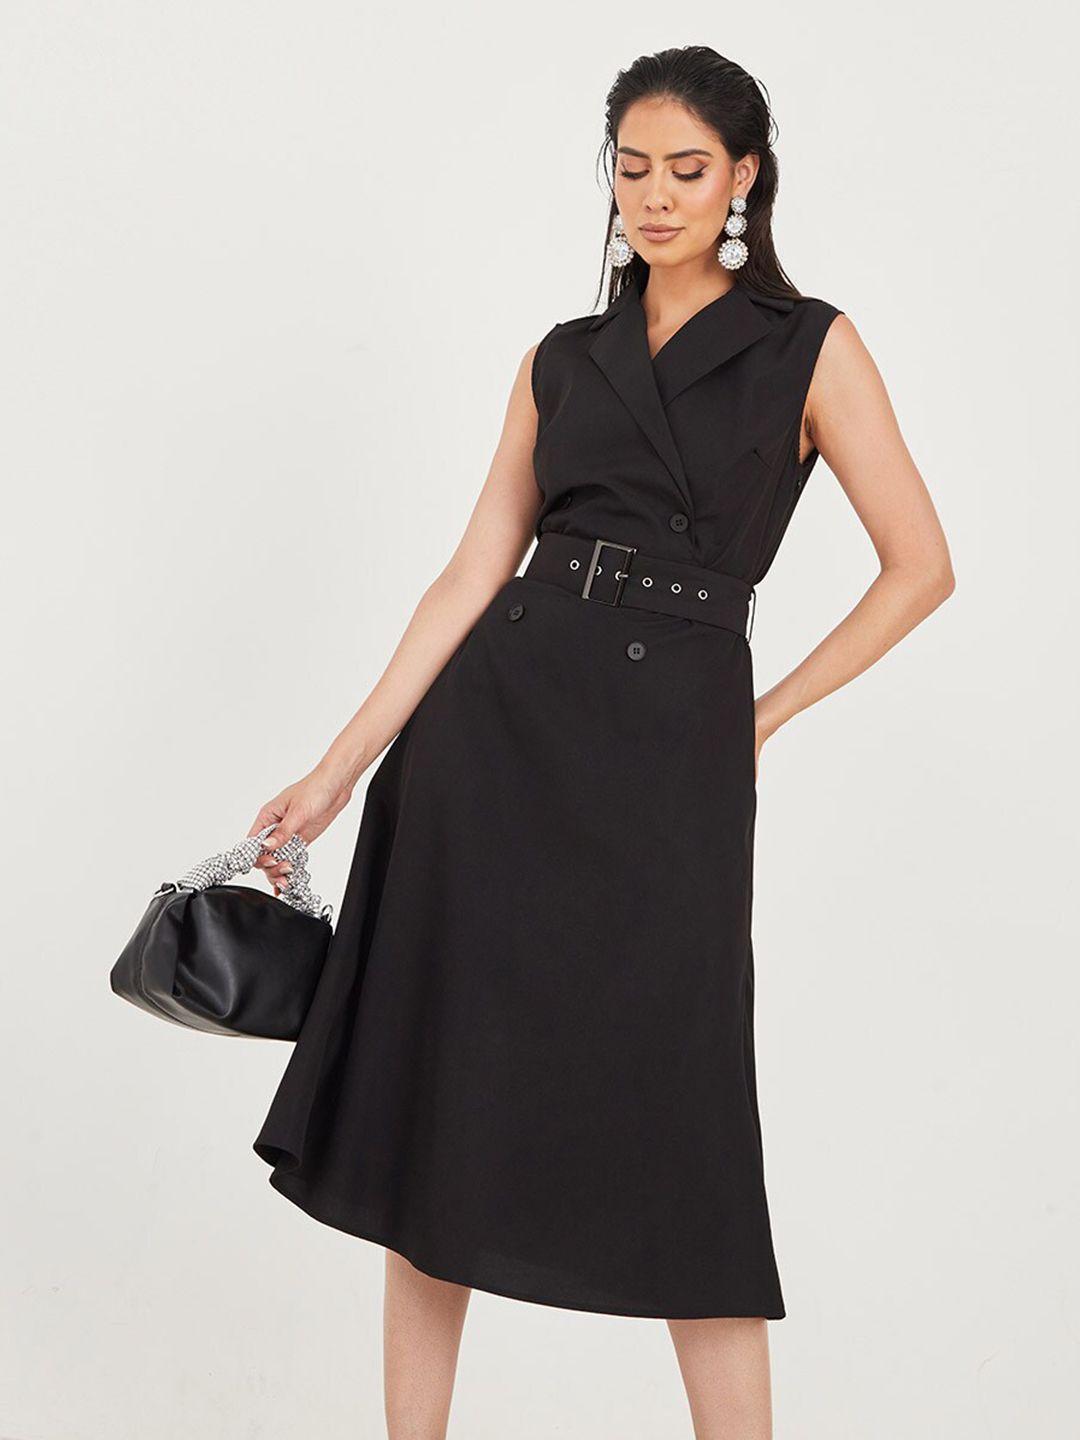 styli black midi dress